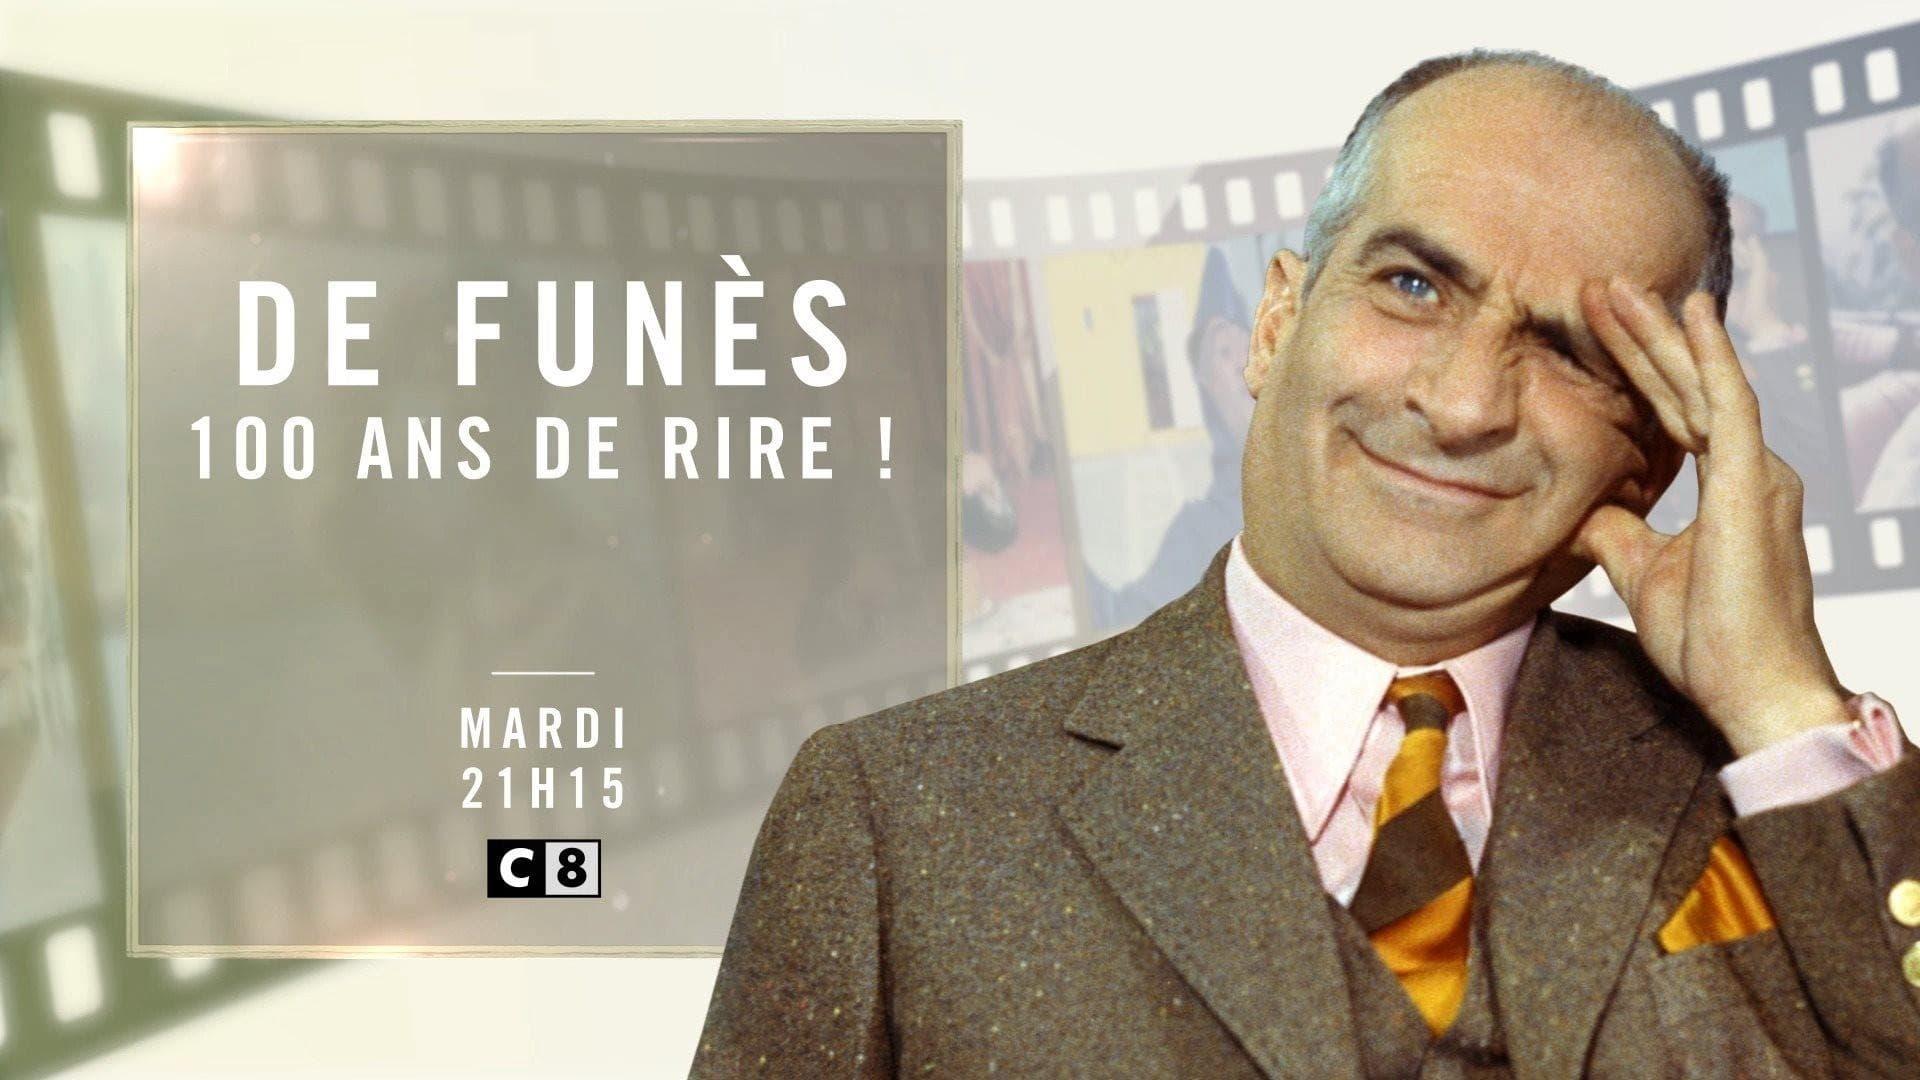 Louis de Funès, 100 ans de Rire backdrop